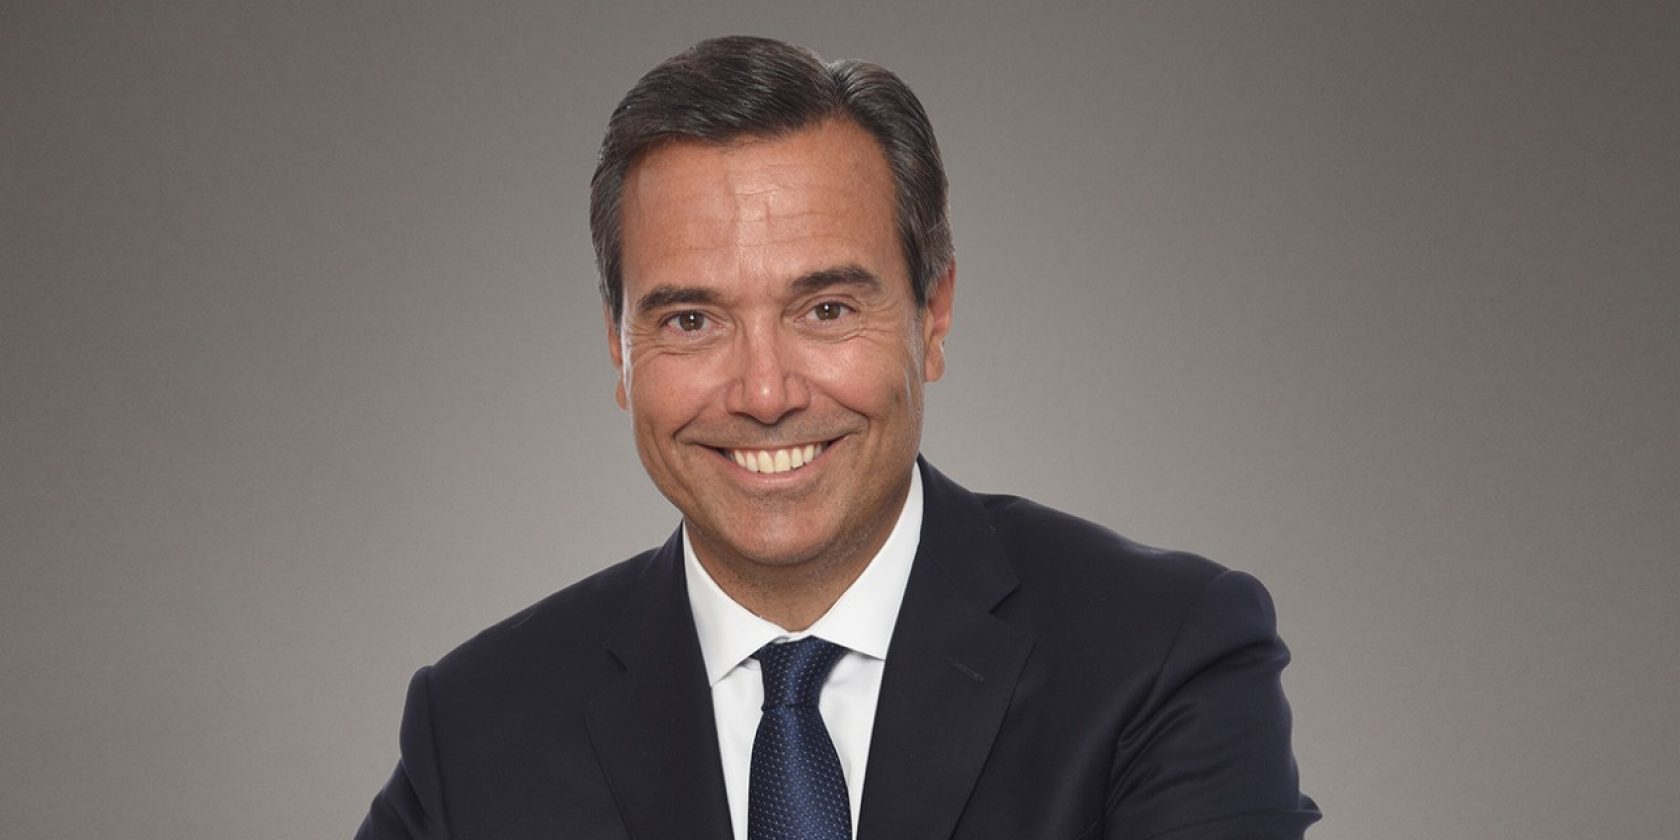 Antonio Horta-Osorio, Chairman Board of Directors, Credit Suisse Group